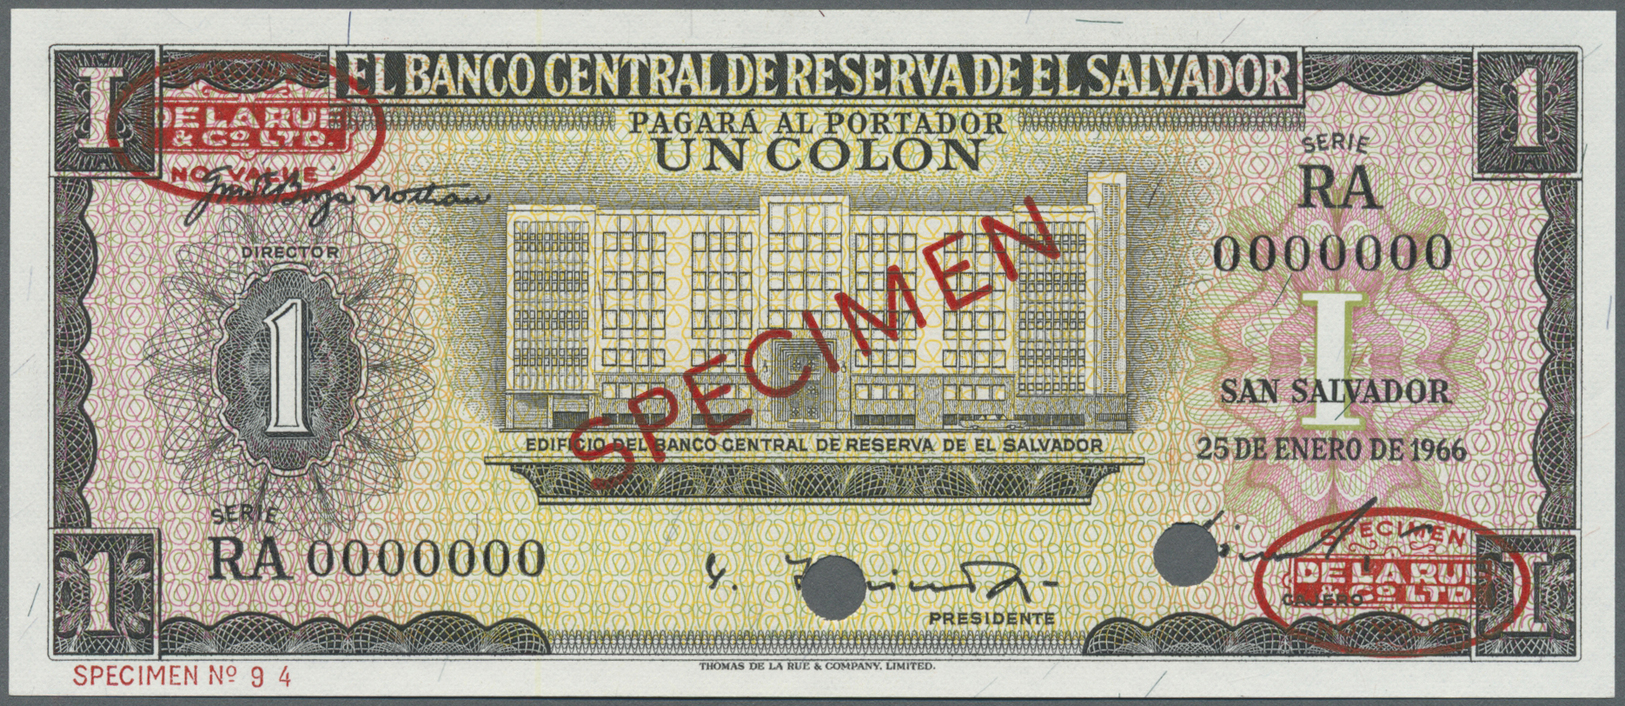 00703 El Salvador: 1 Colon 1966 Specimen P. 100s In Condition: UNC. - El Salvador